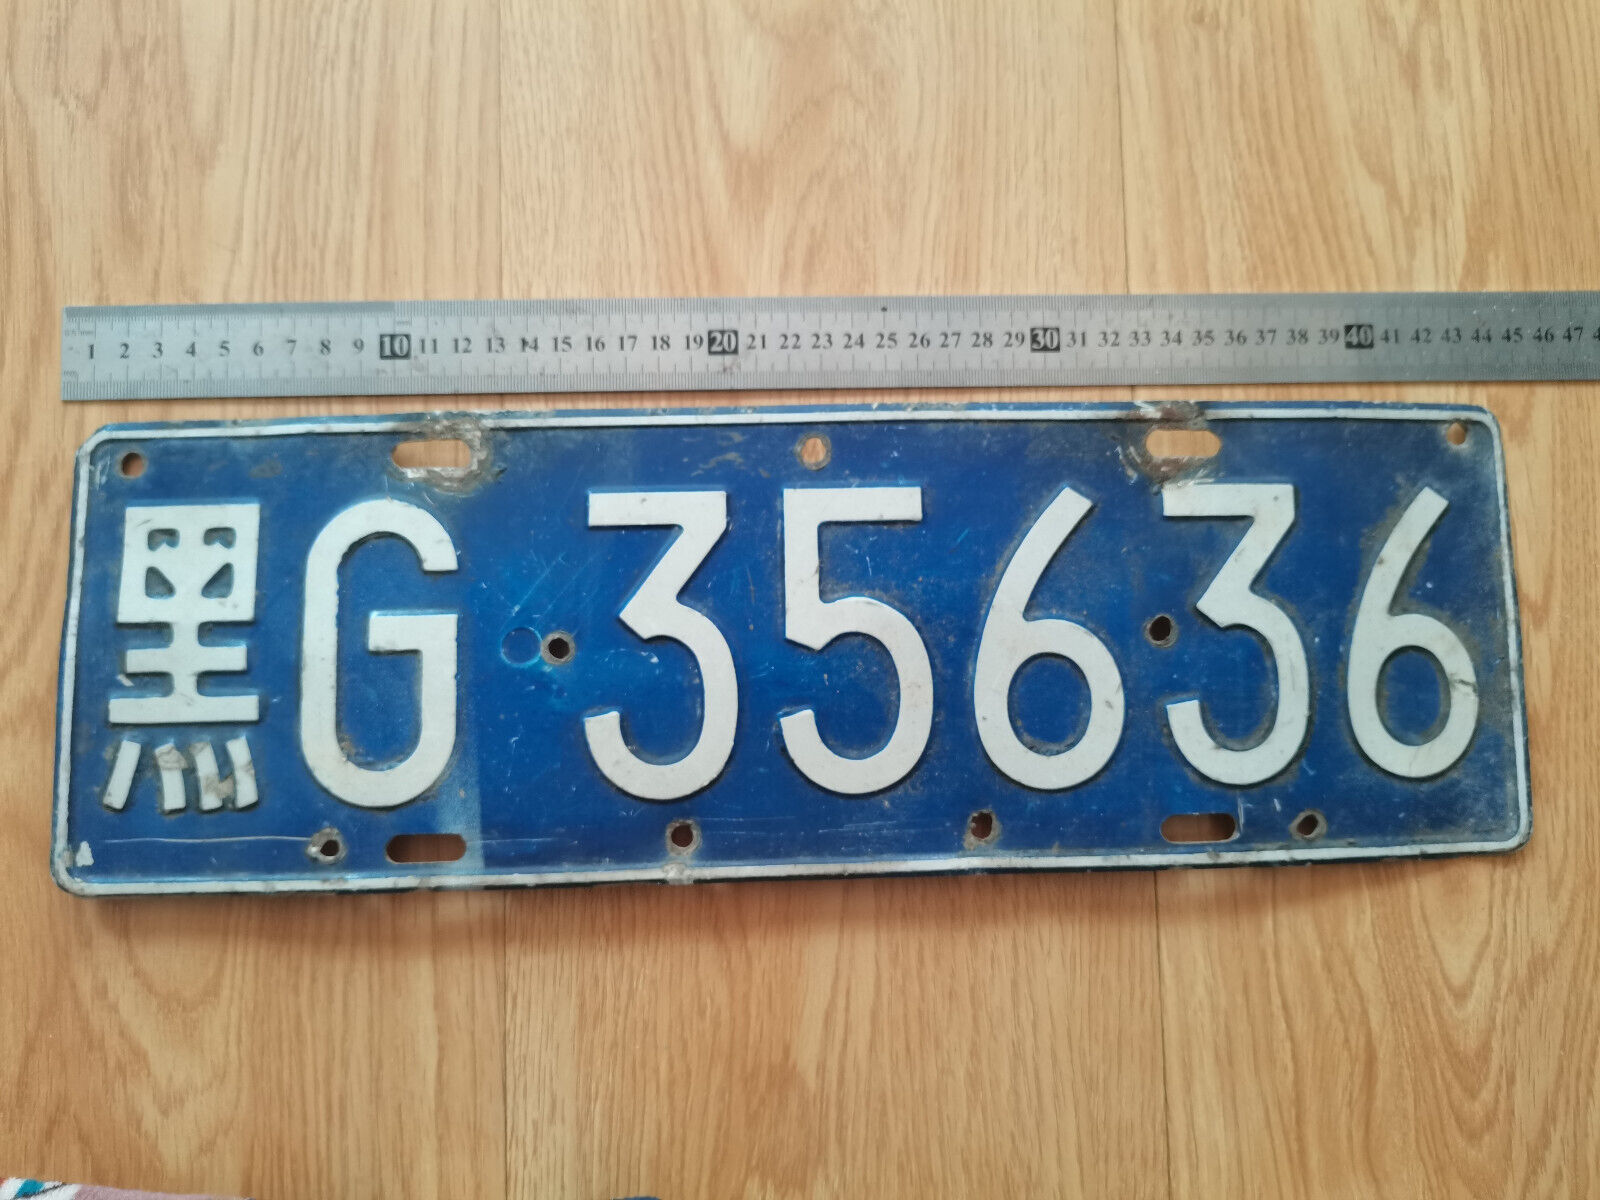 a China aluminium car license plate-黑(Heilongjiang)G(Jixi).35636